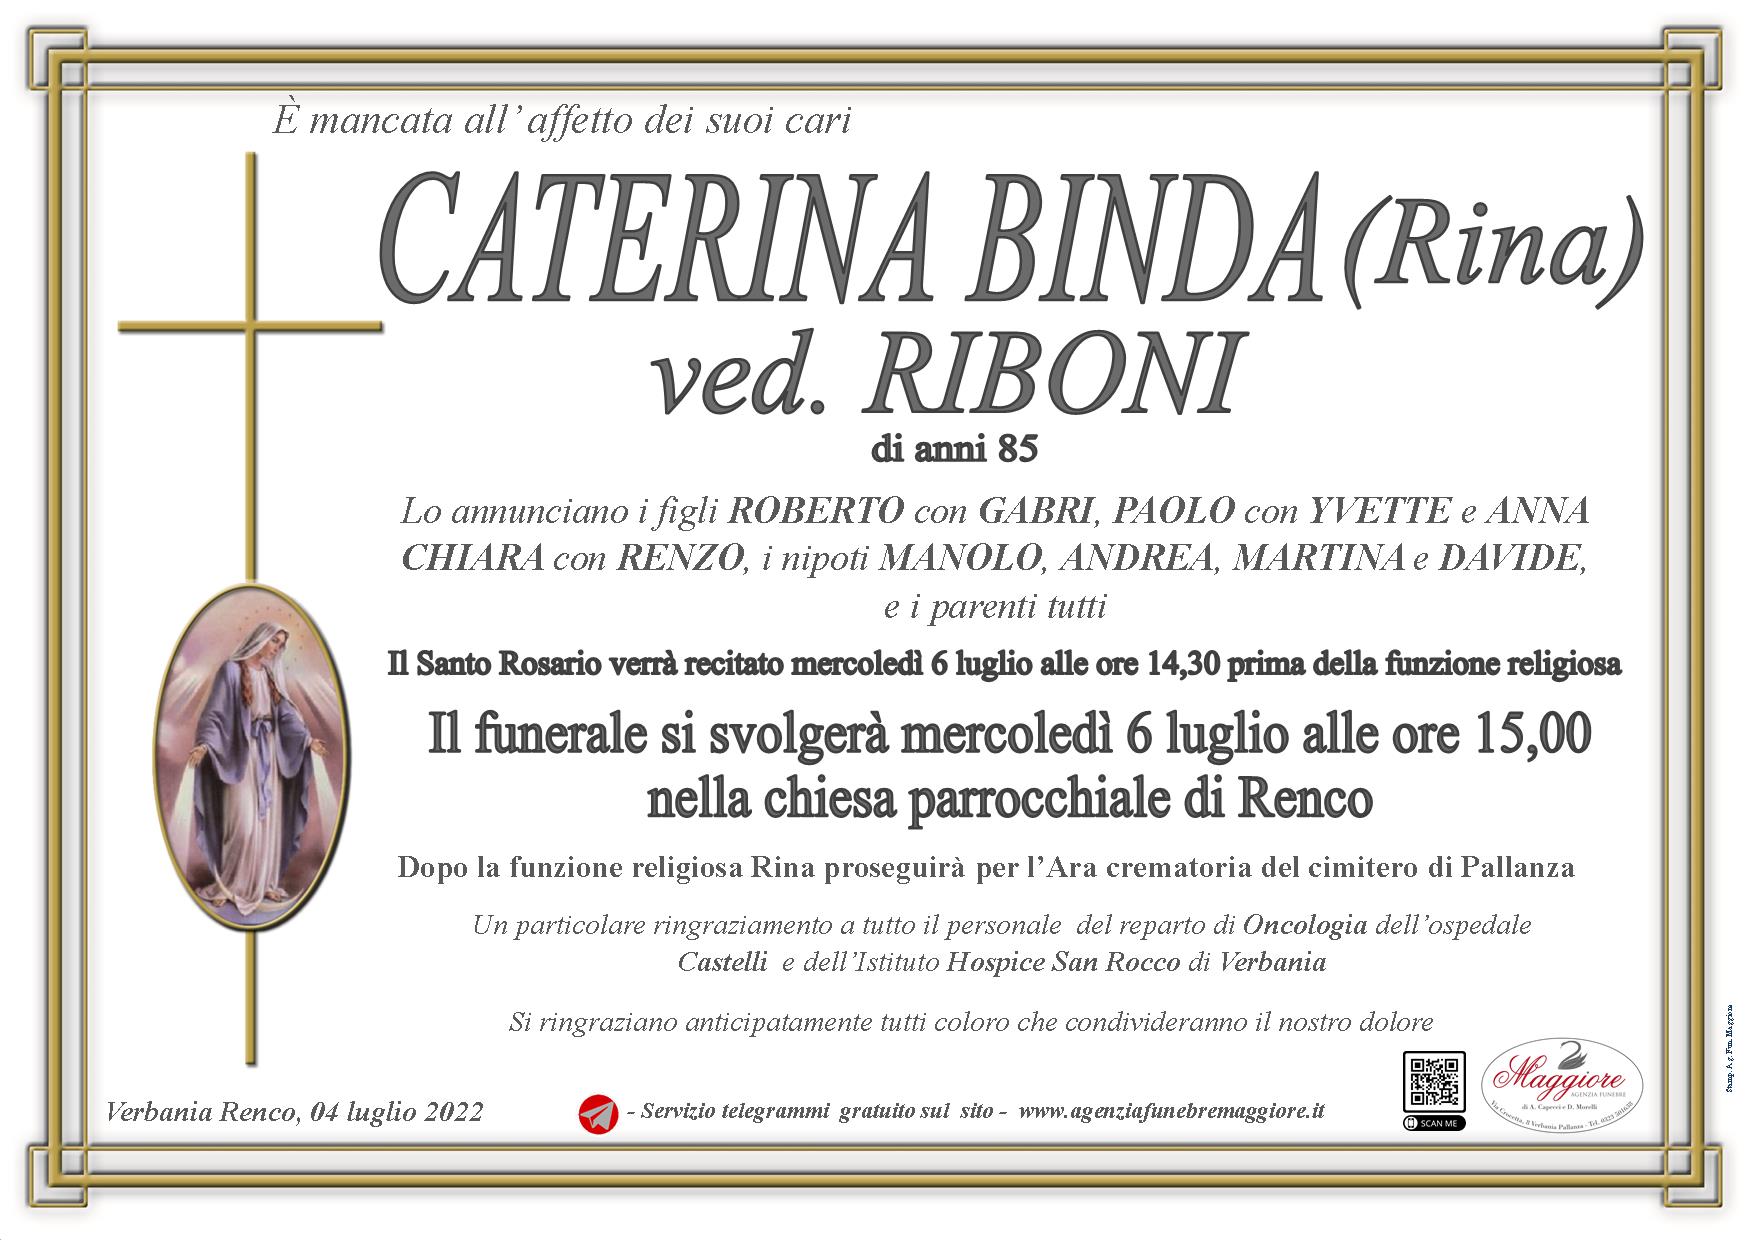 Caterina Binda ved. ved. Riboni